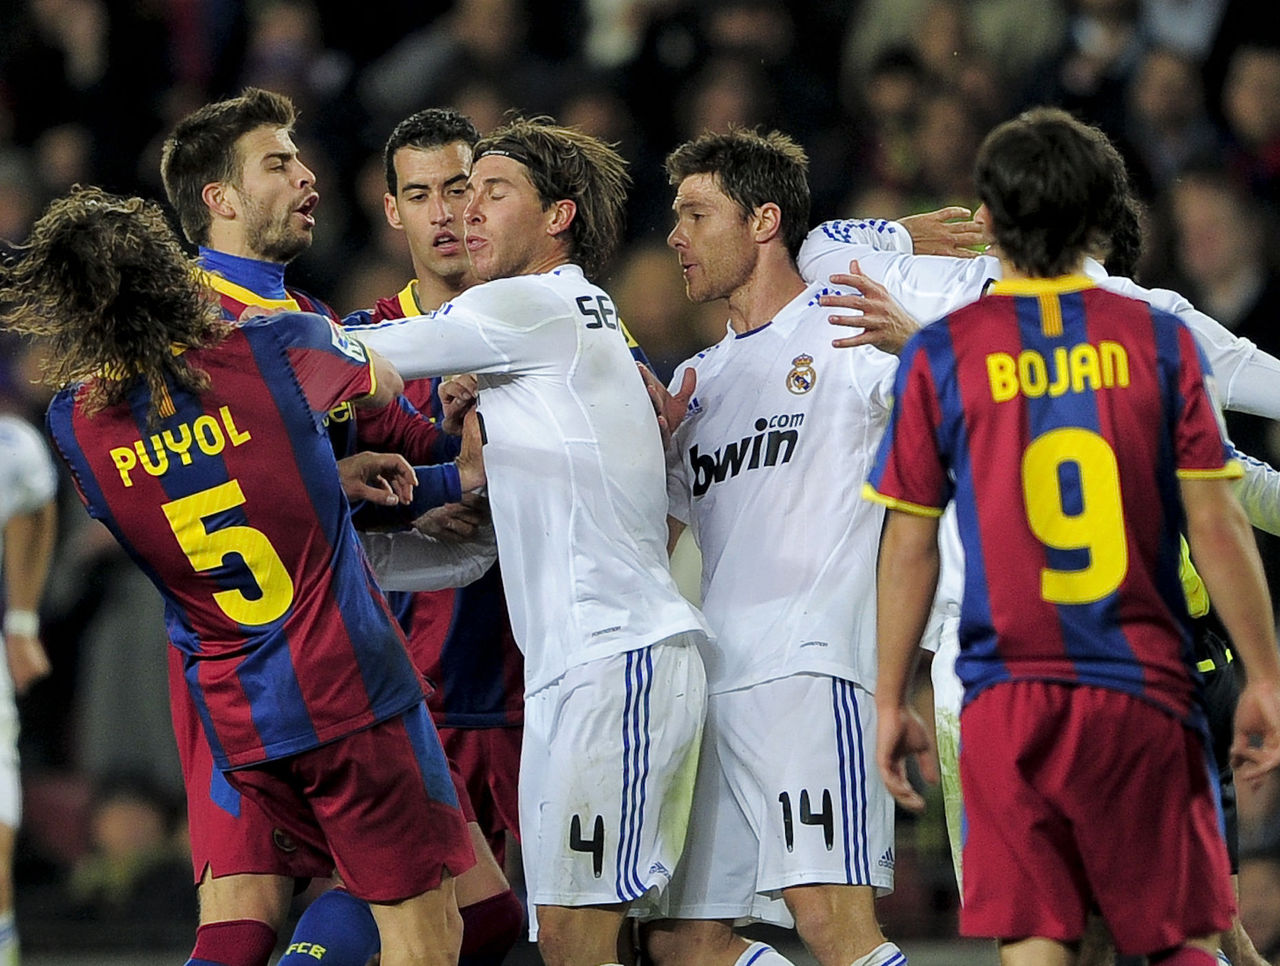 FC Barcelona vs Real Madrid -El Clasico Rivalry.